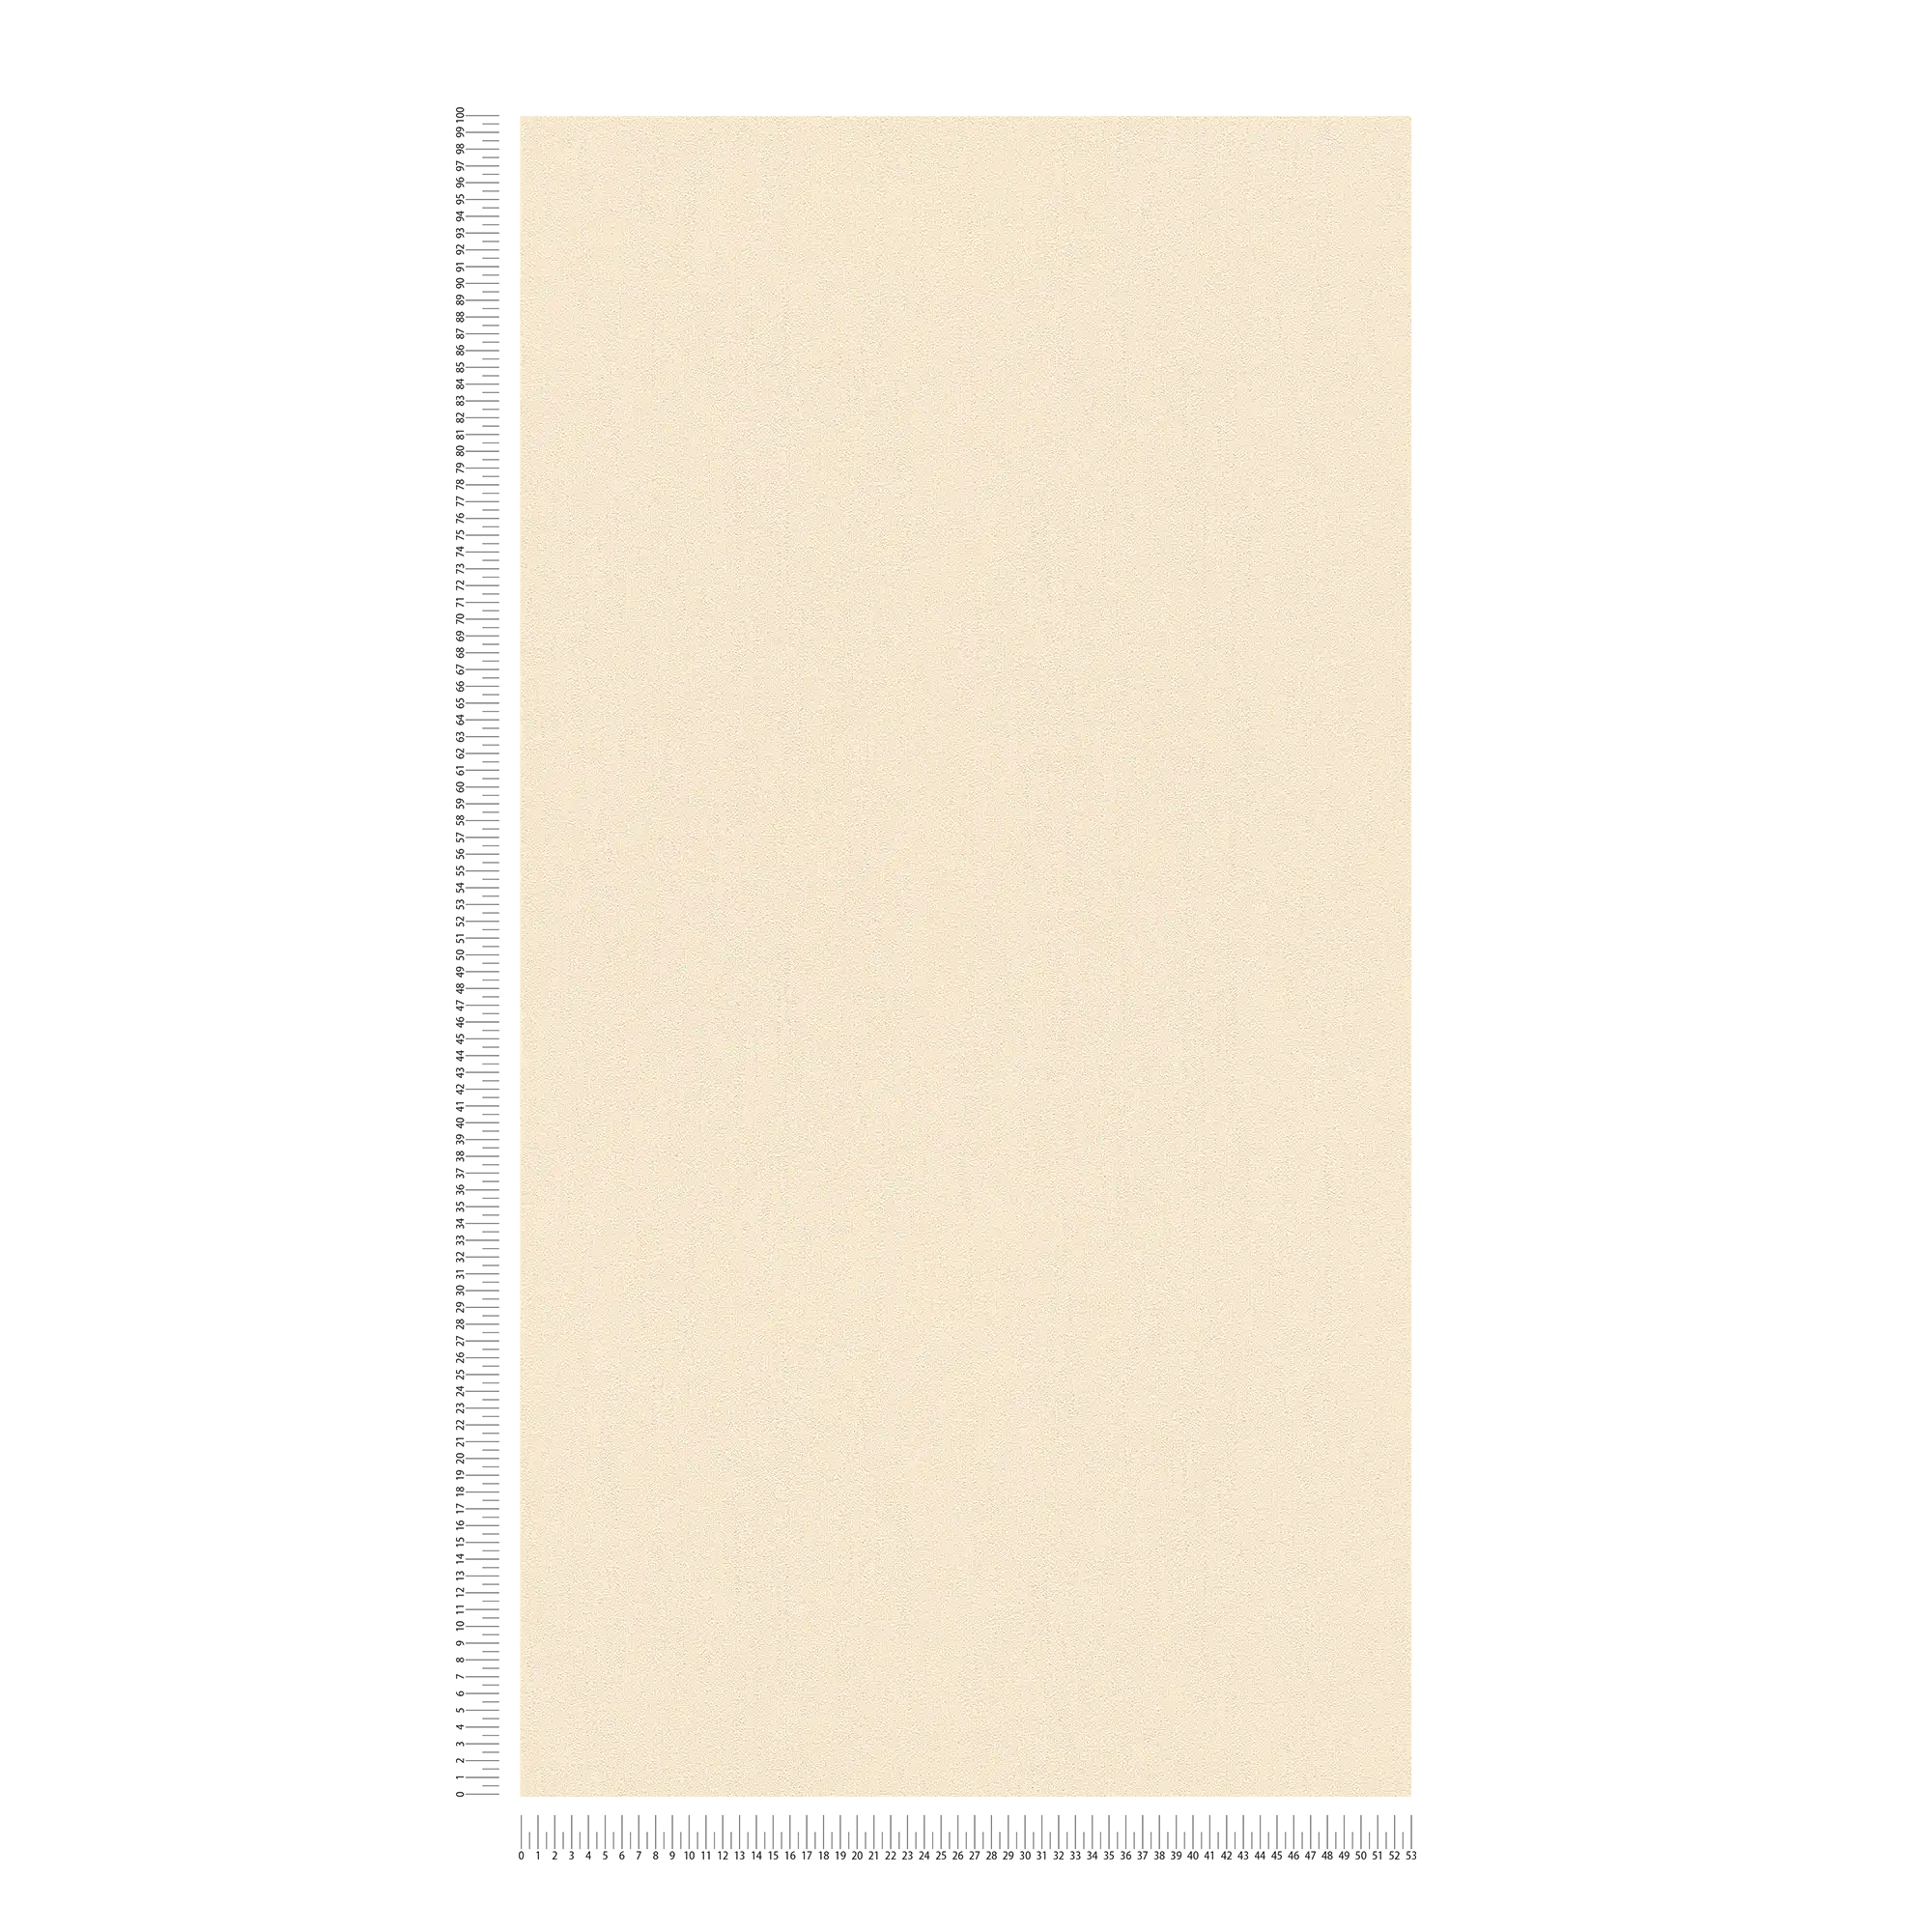             Papel pintado unitario Karl LAGERFELD con estructura en relieve - beige
        